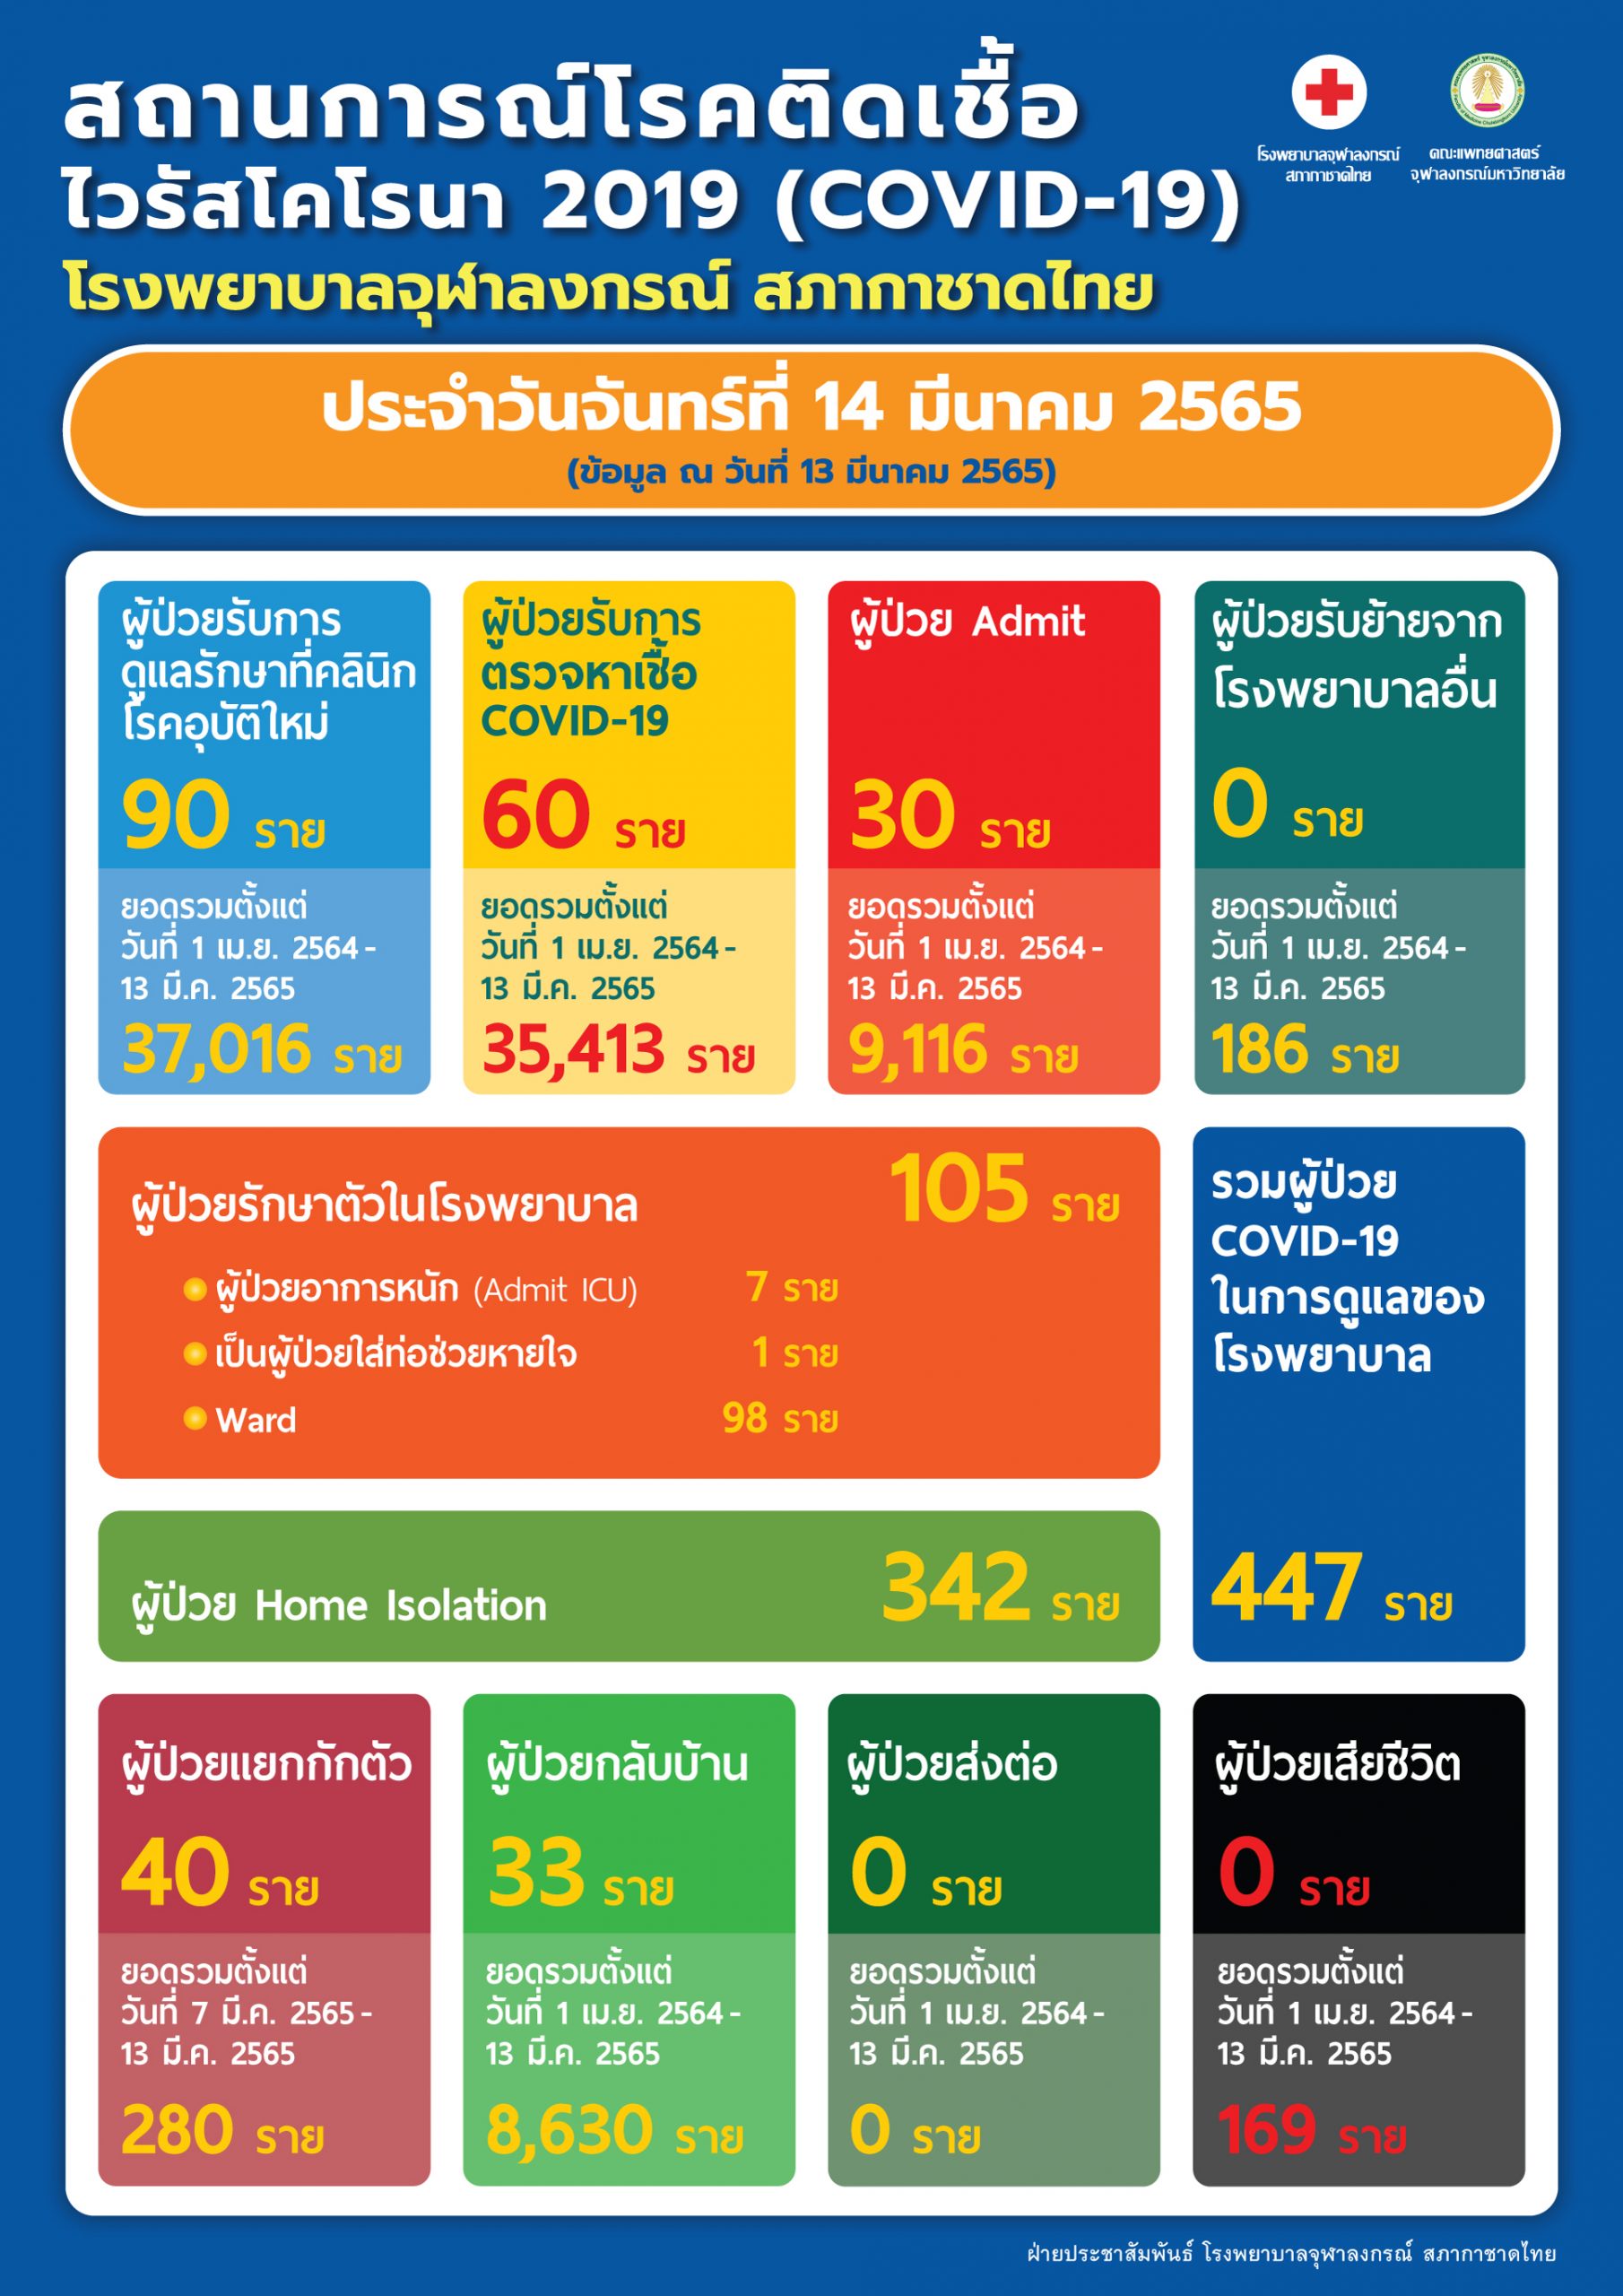 สถานการณ์โรคติดเชื้อไวรัสโคโรนา 2019 (COVID-19) โรงพยาบาลจุฬาลงกรณ์ สภากาชาดไทย ประจำวันจันทร์ที่ 14 มีนาคม 2565